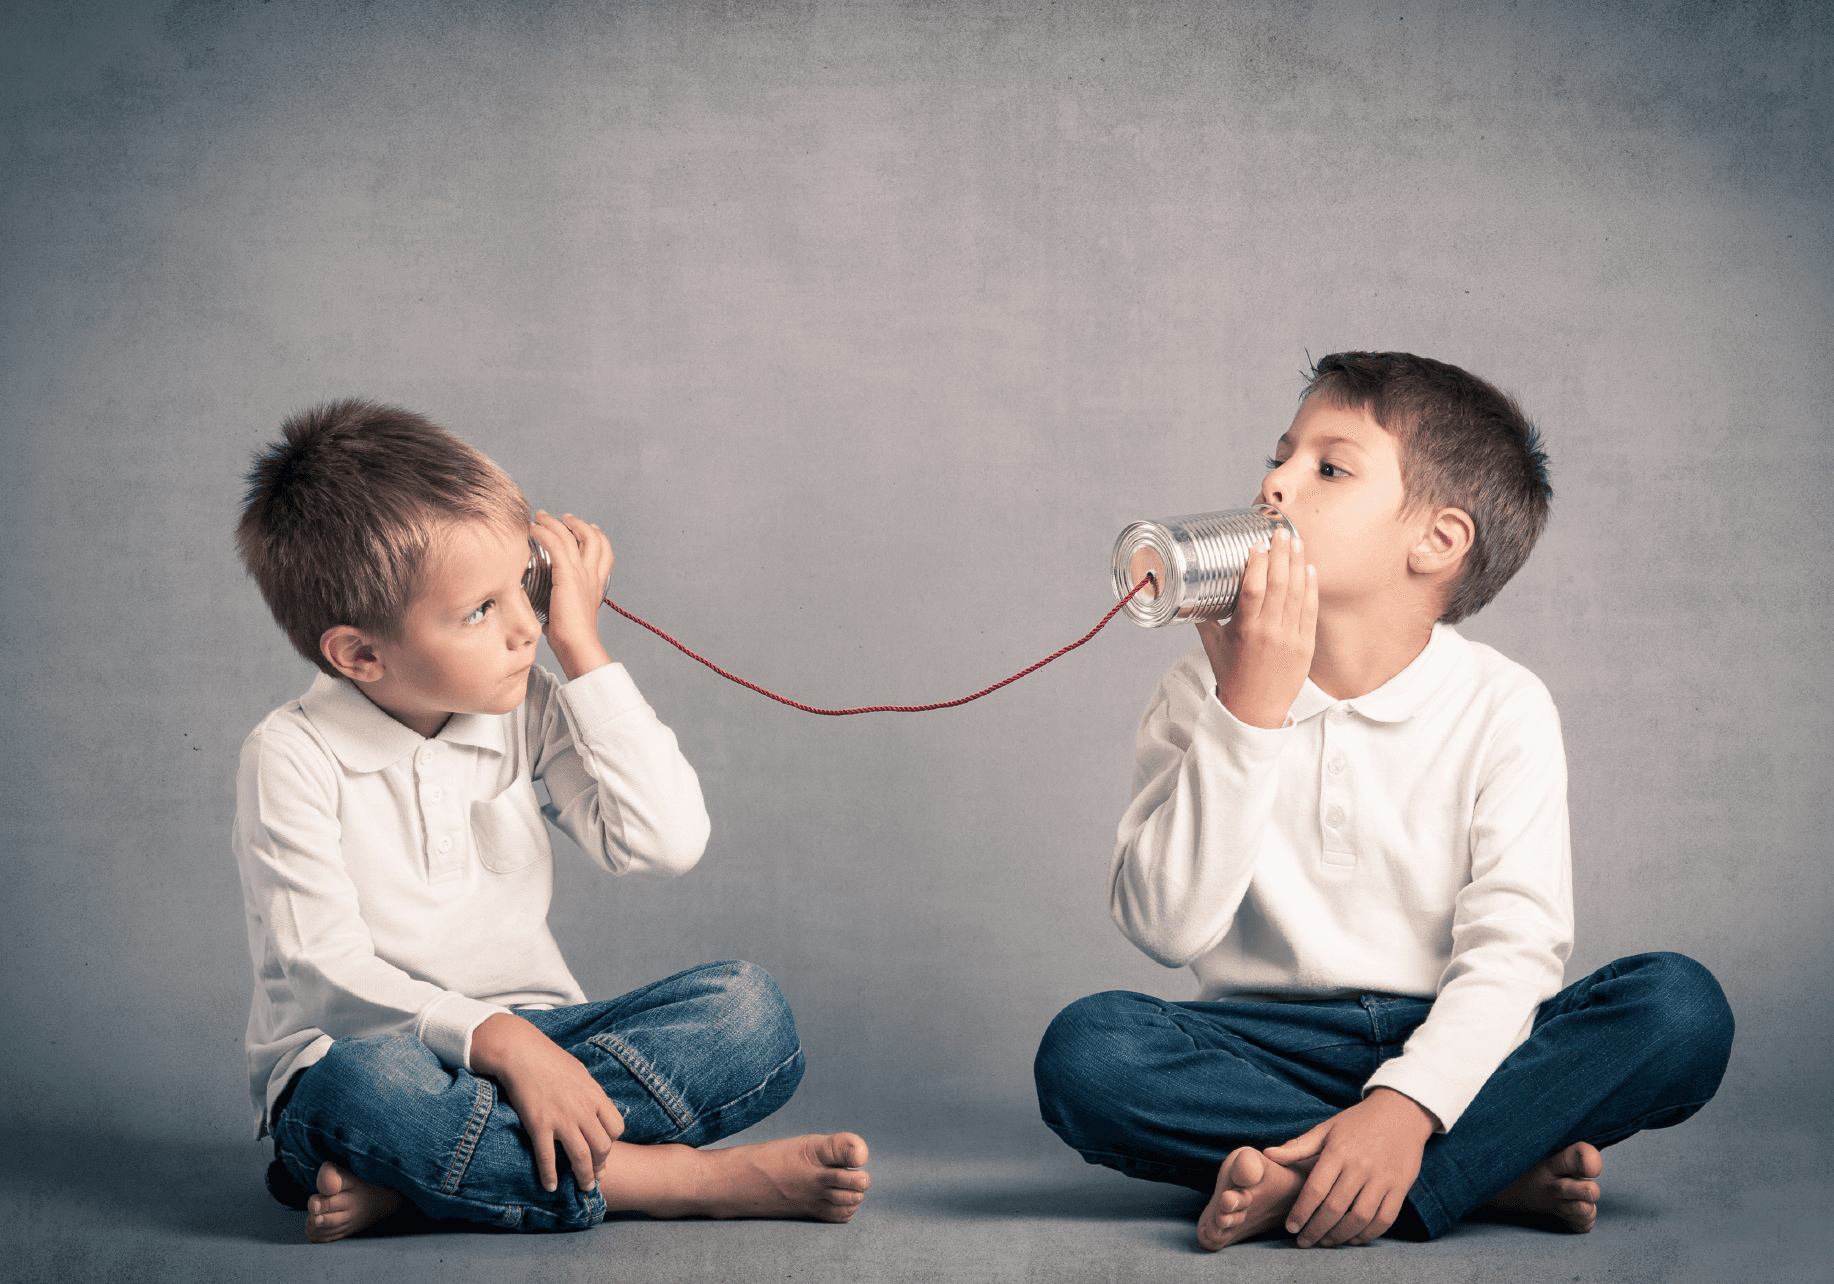 Thumbnail: Zwei Jungen spielen passend zum Thema mit einem Dosentelefon